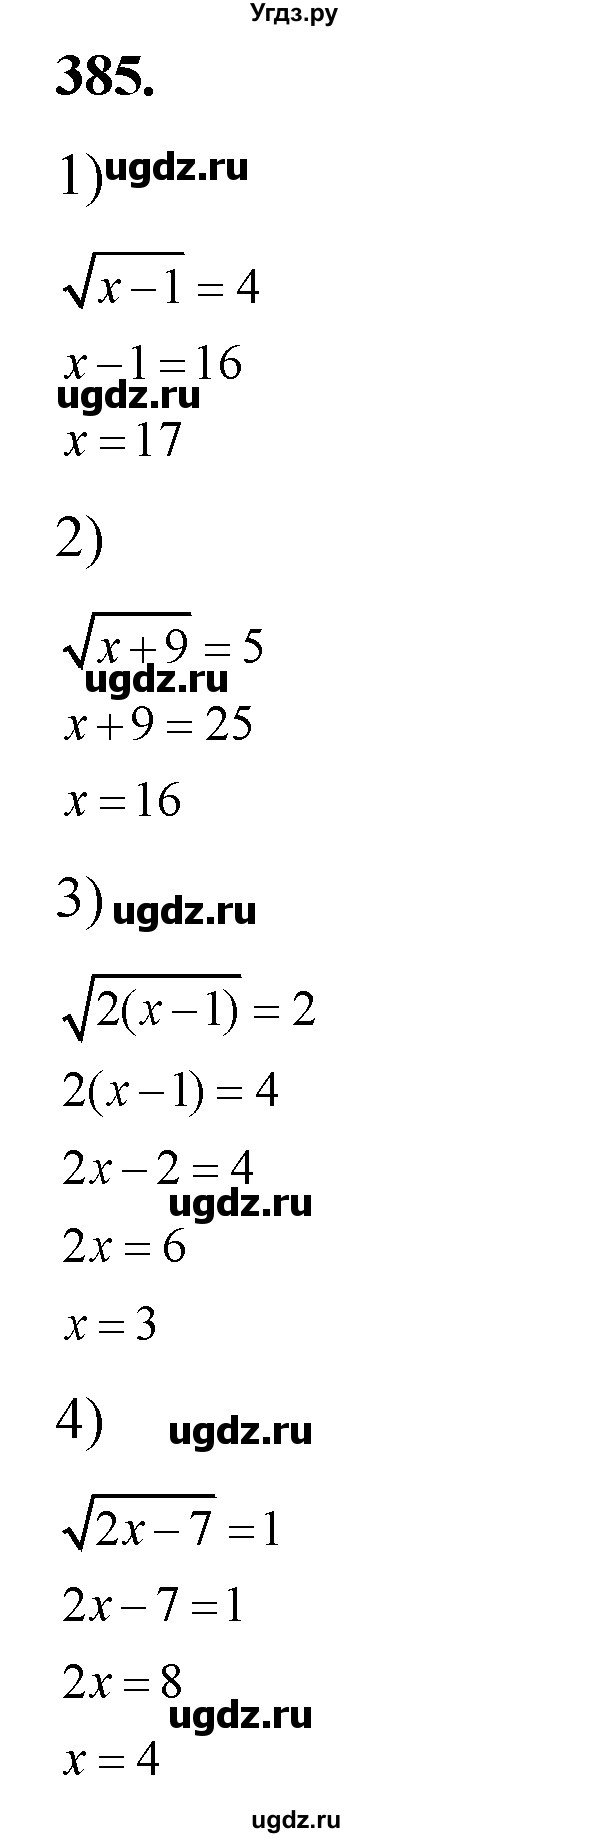 385. Решить уравнение: 1) √х-1=4; 
2) √x+9=5;
3) √2(х-1)=2;
4) √2x – 7=1.